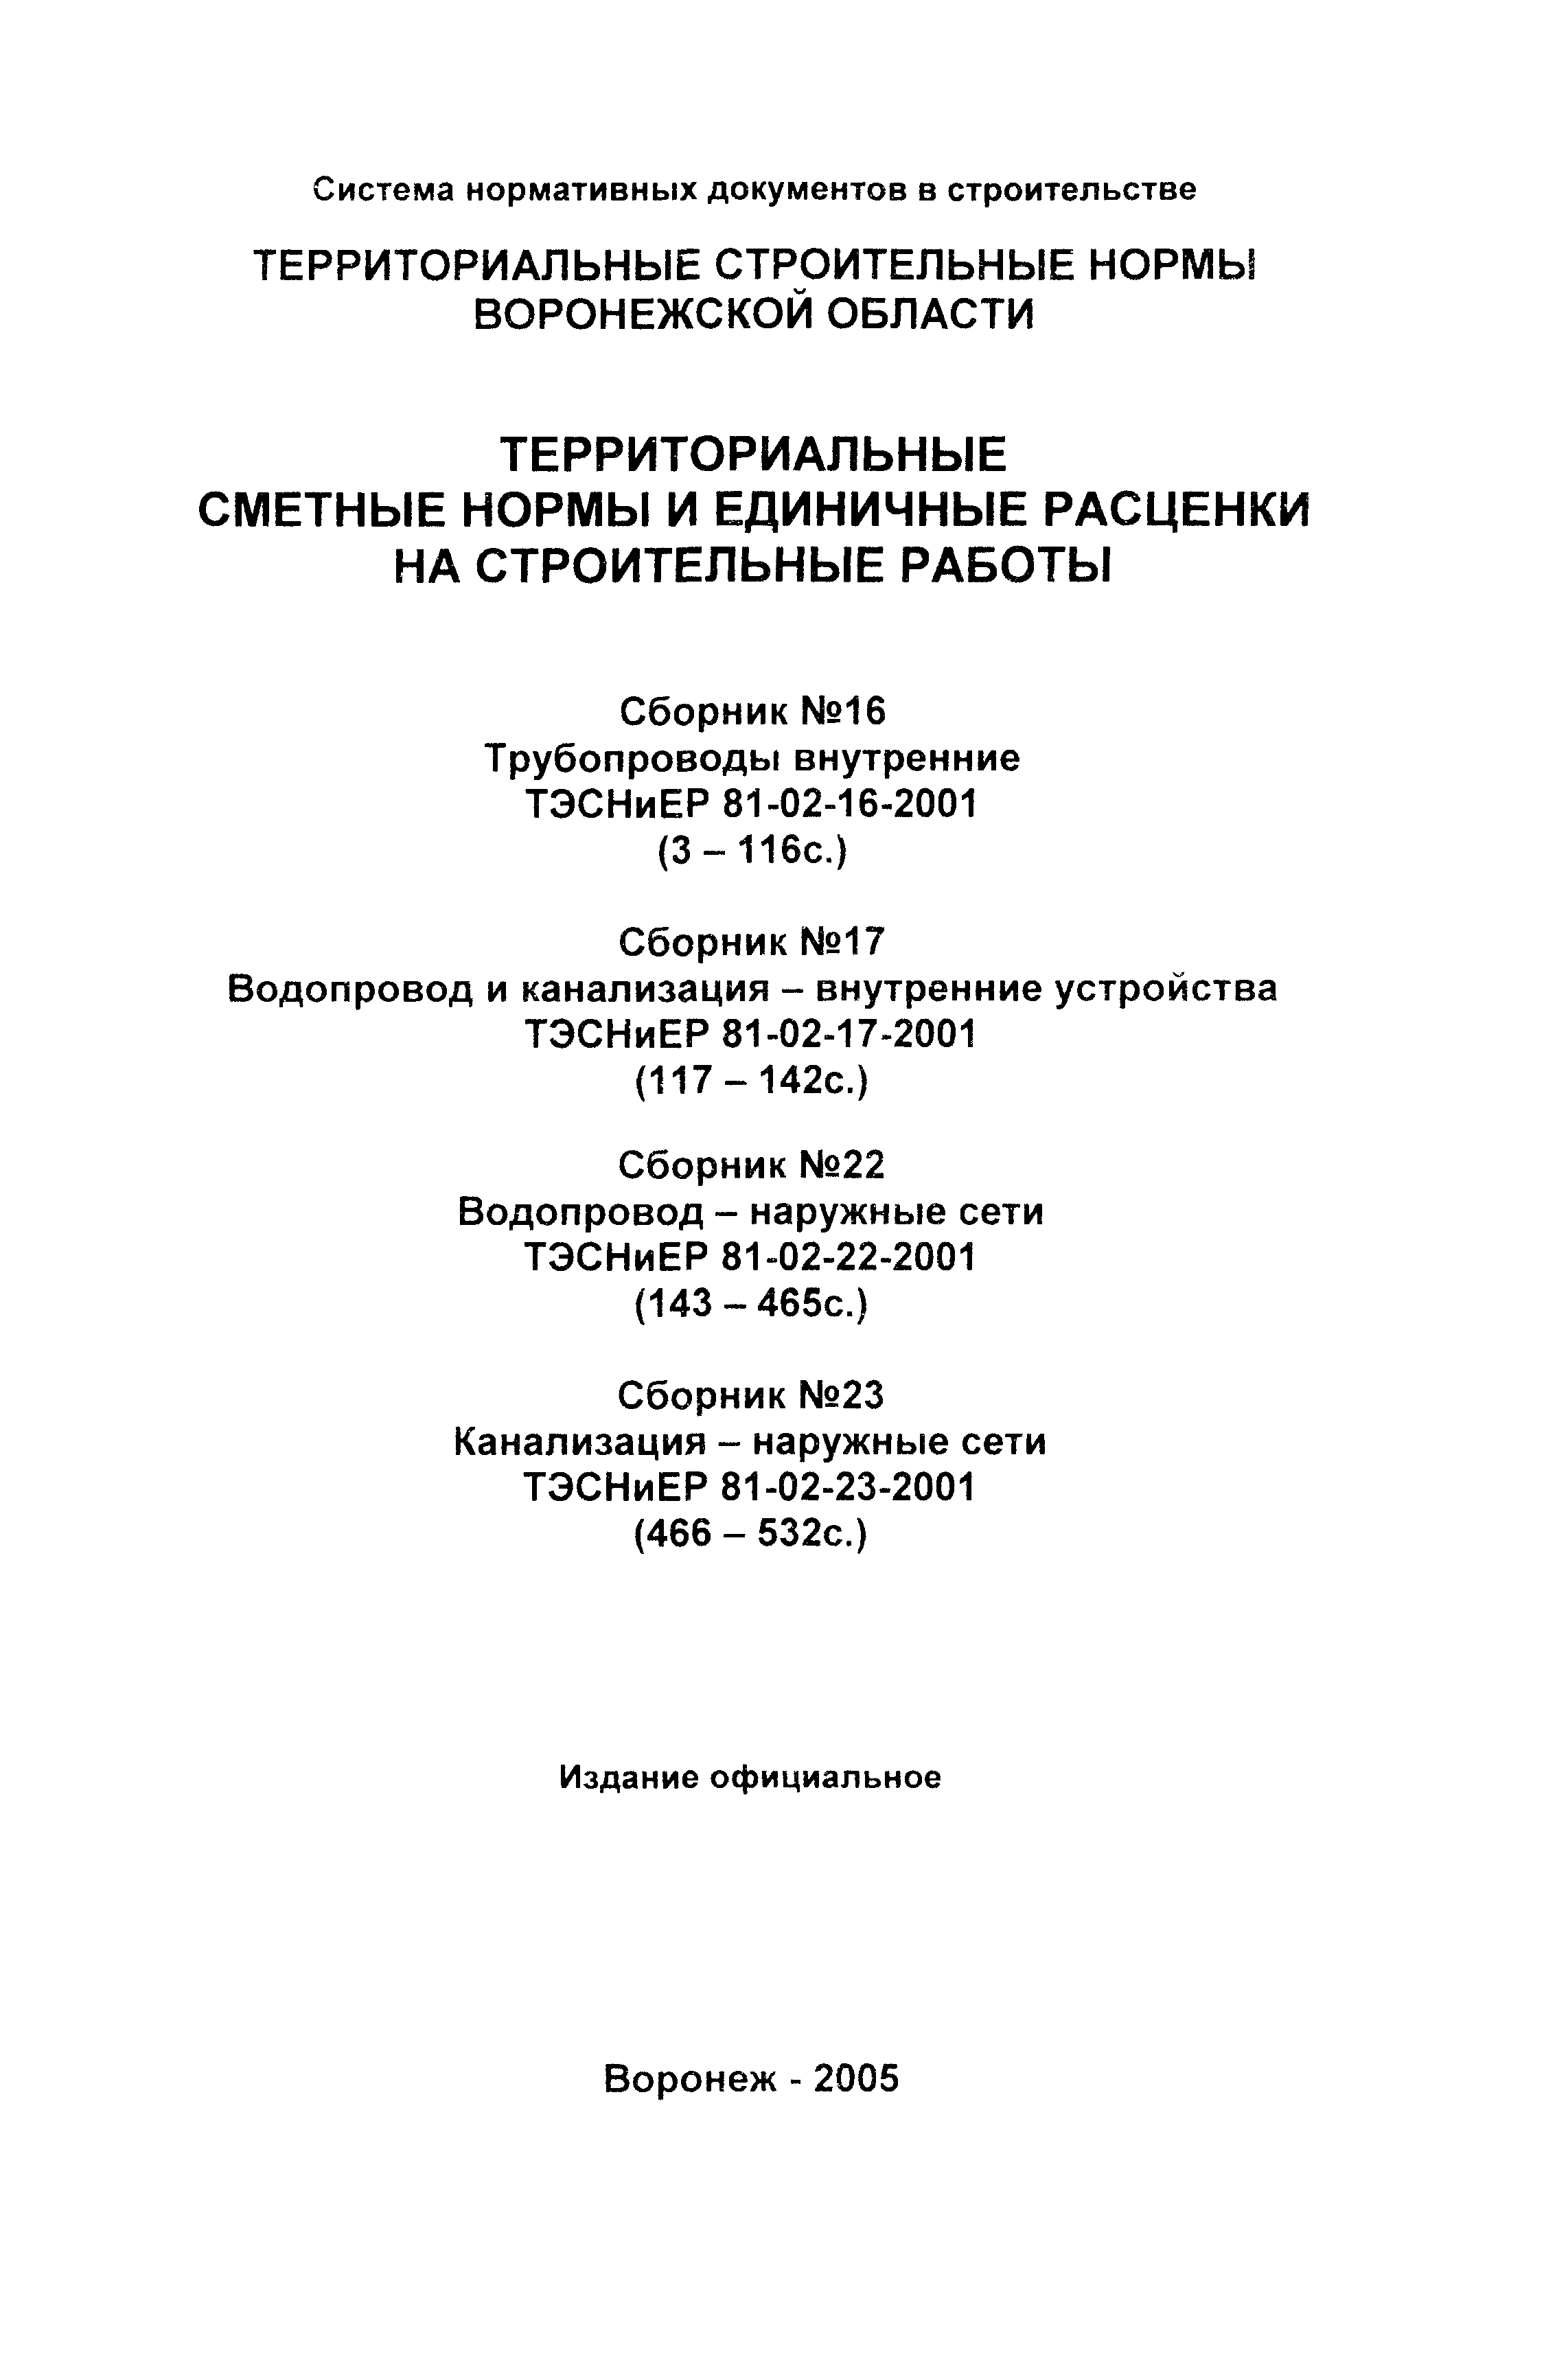 ТЭСНиЕР Воронежской области 81-02-23-2001